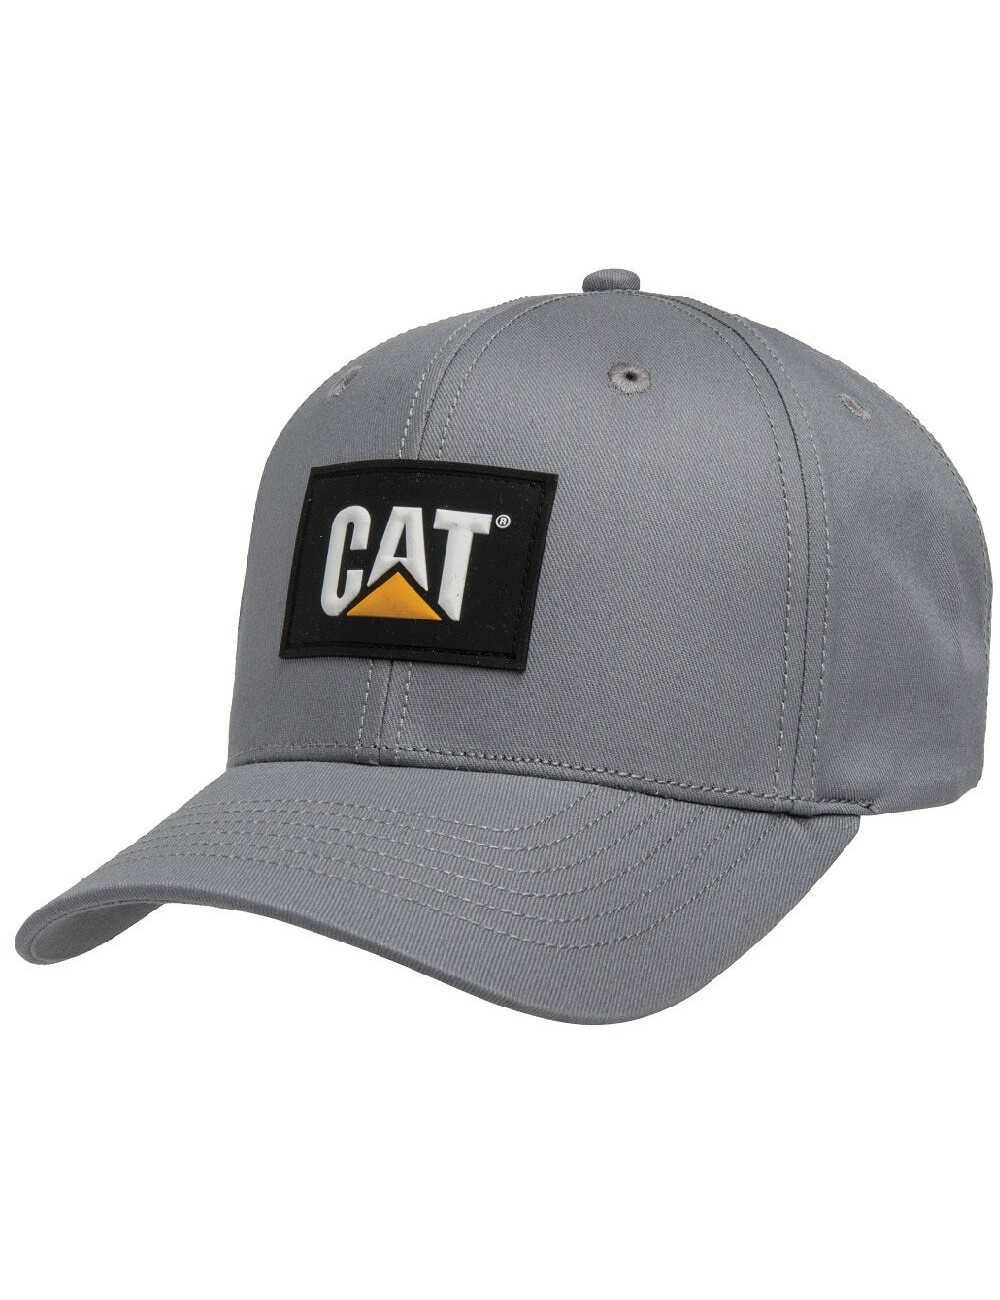 CAT Patch Cap